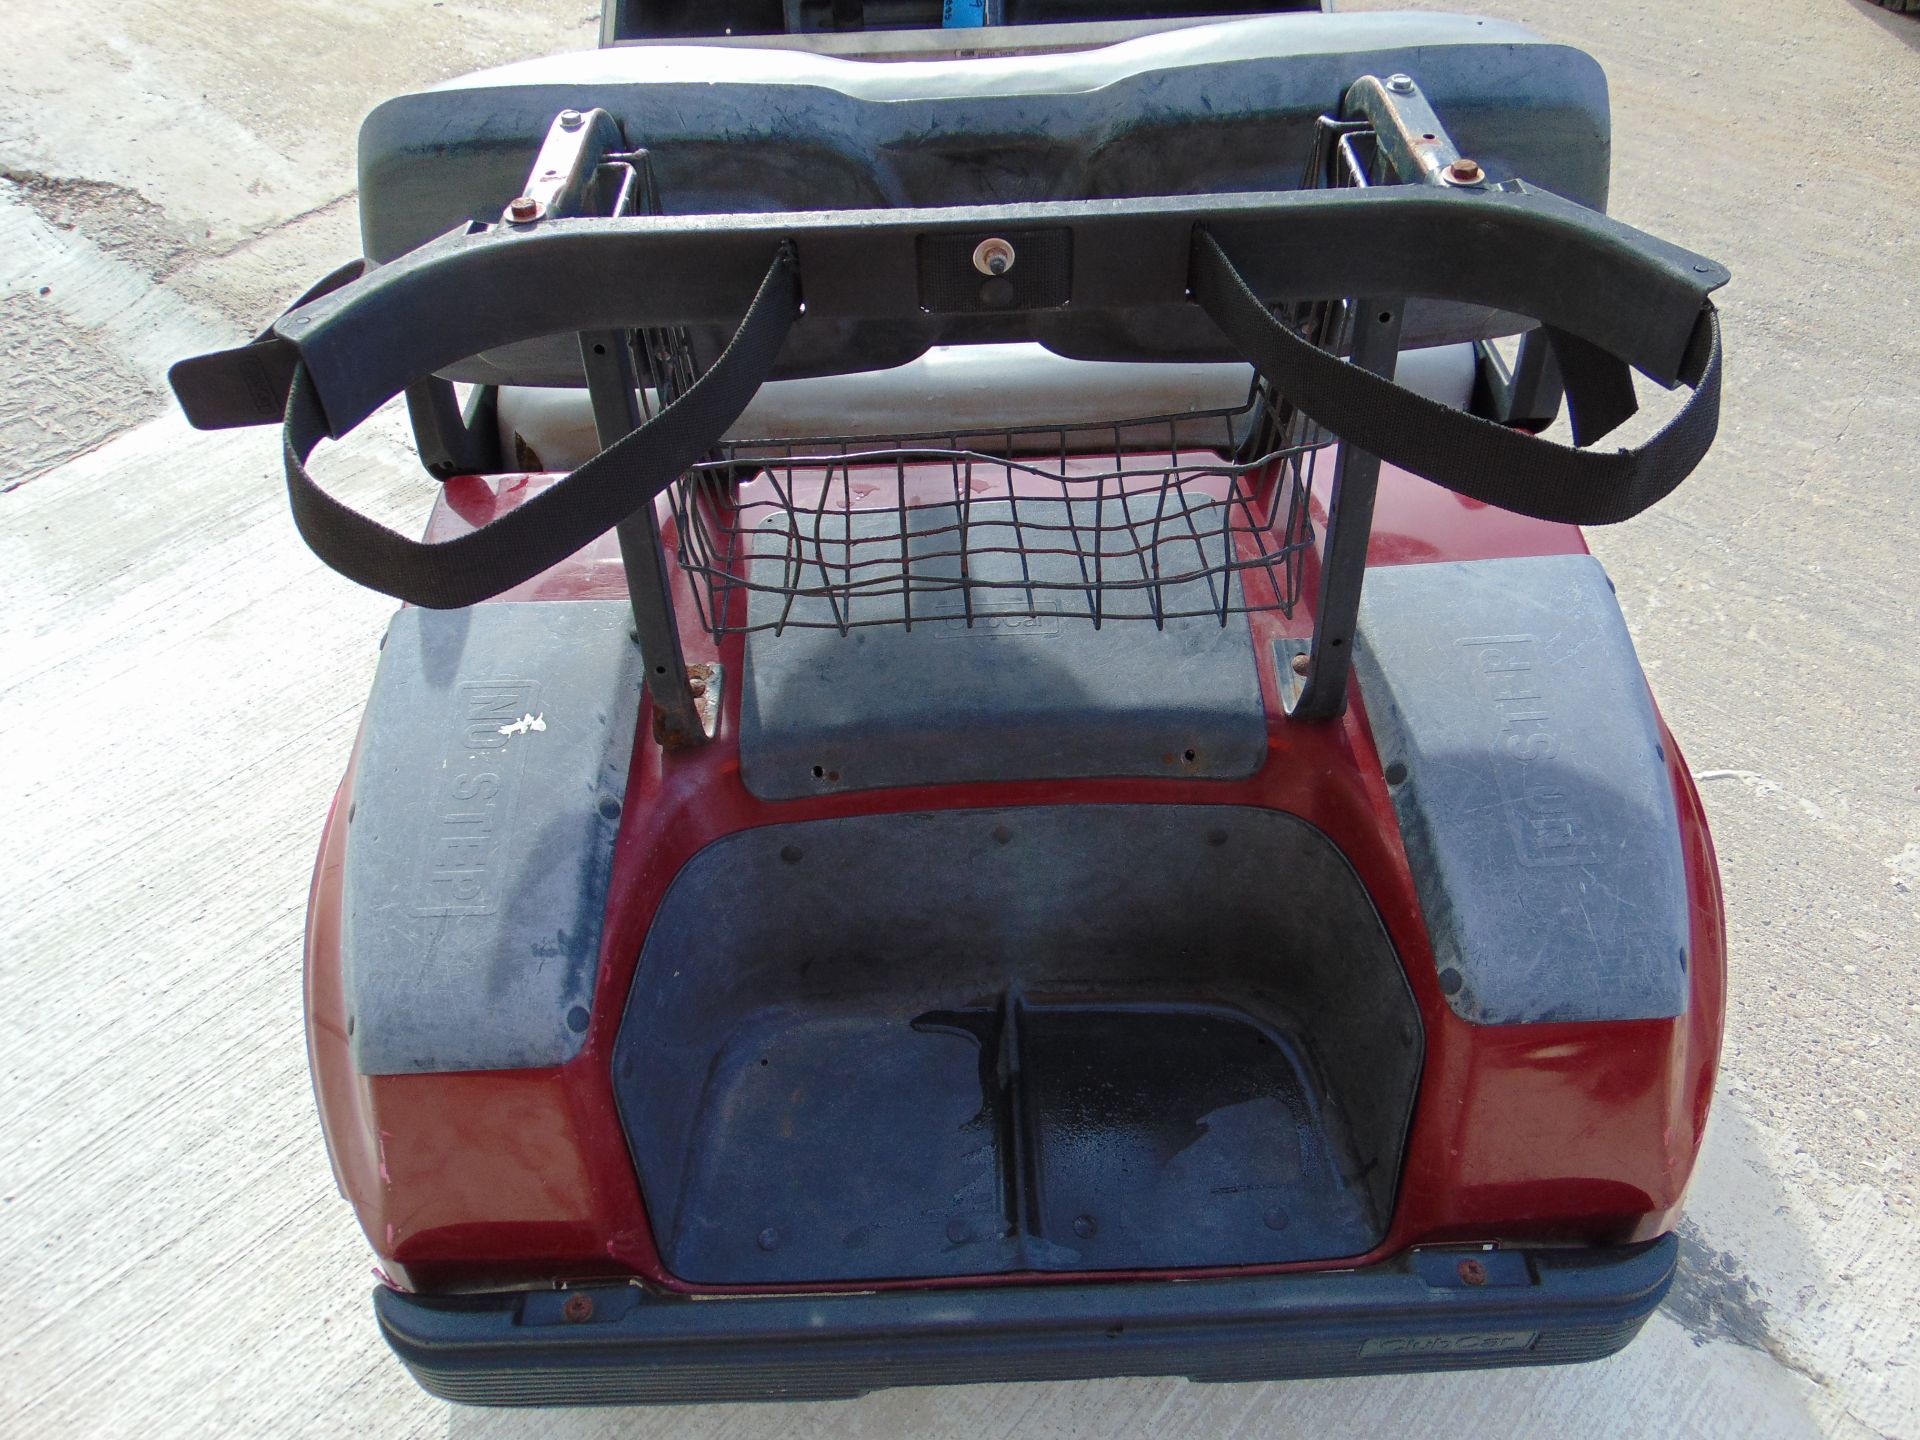 Club Car Golf Cart - Petrol Engine - Image 17 of 17